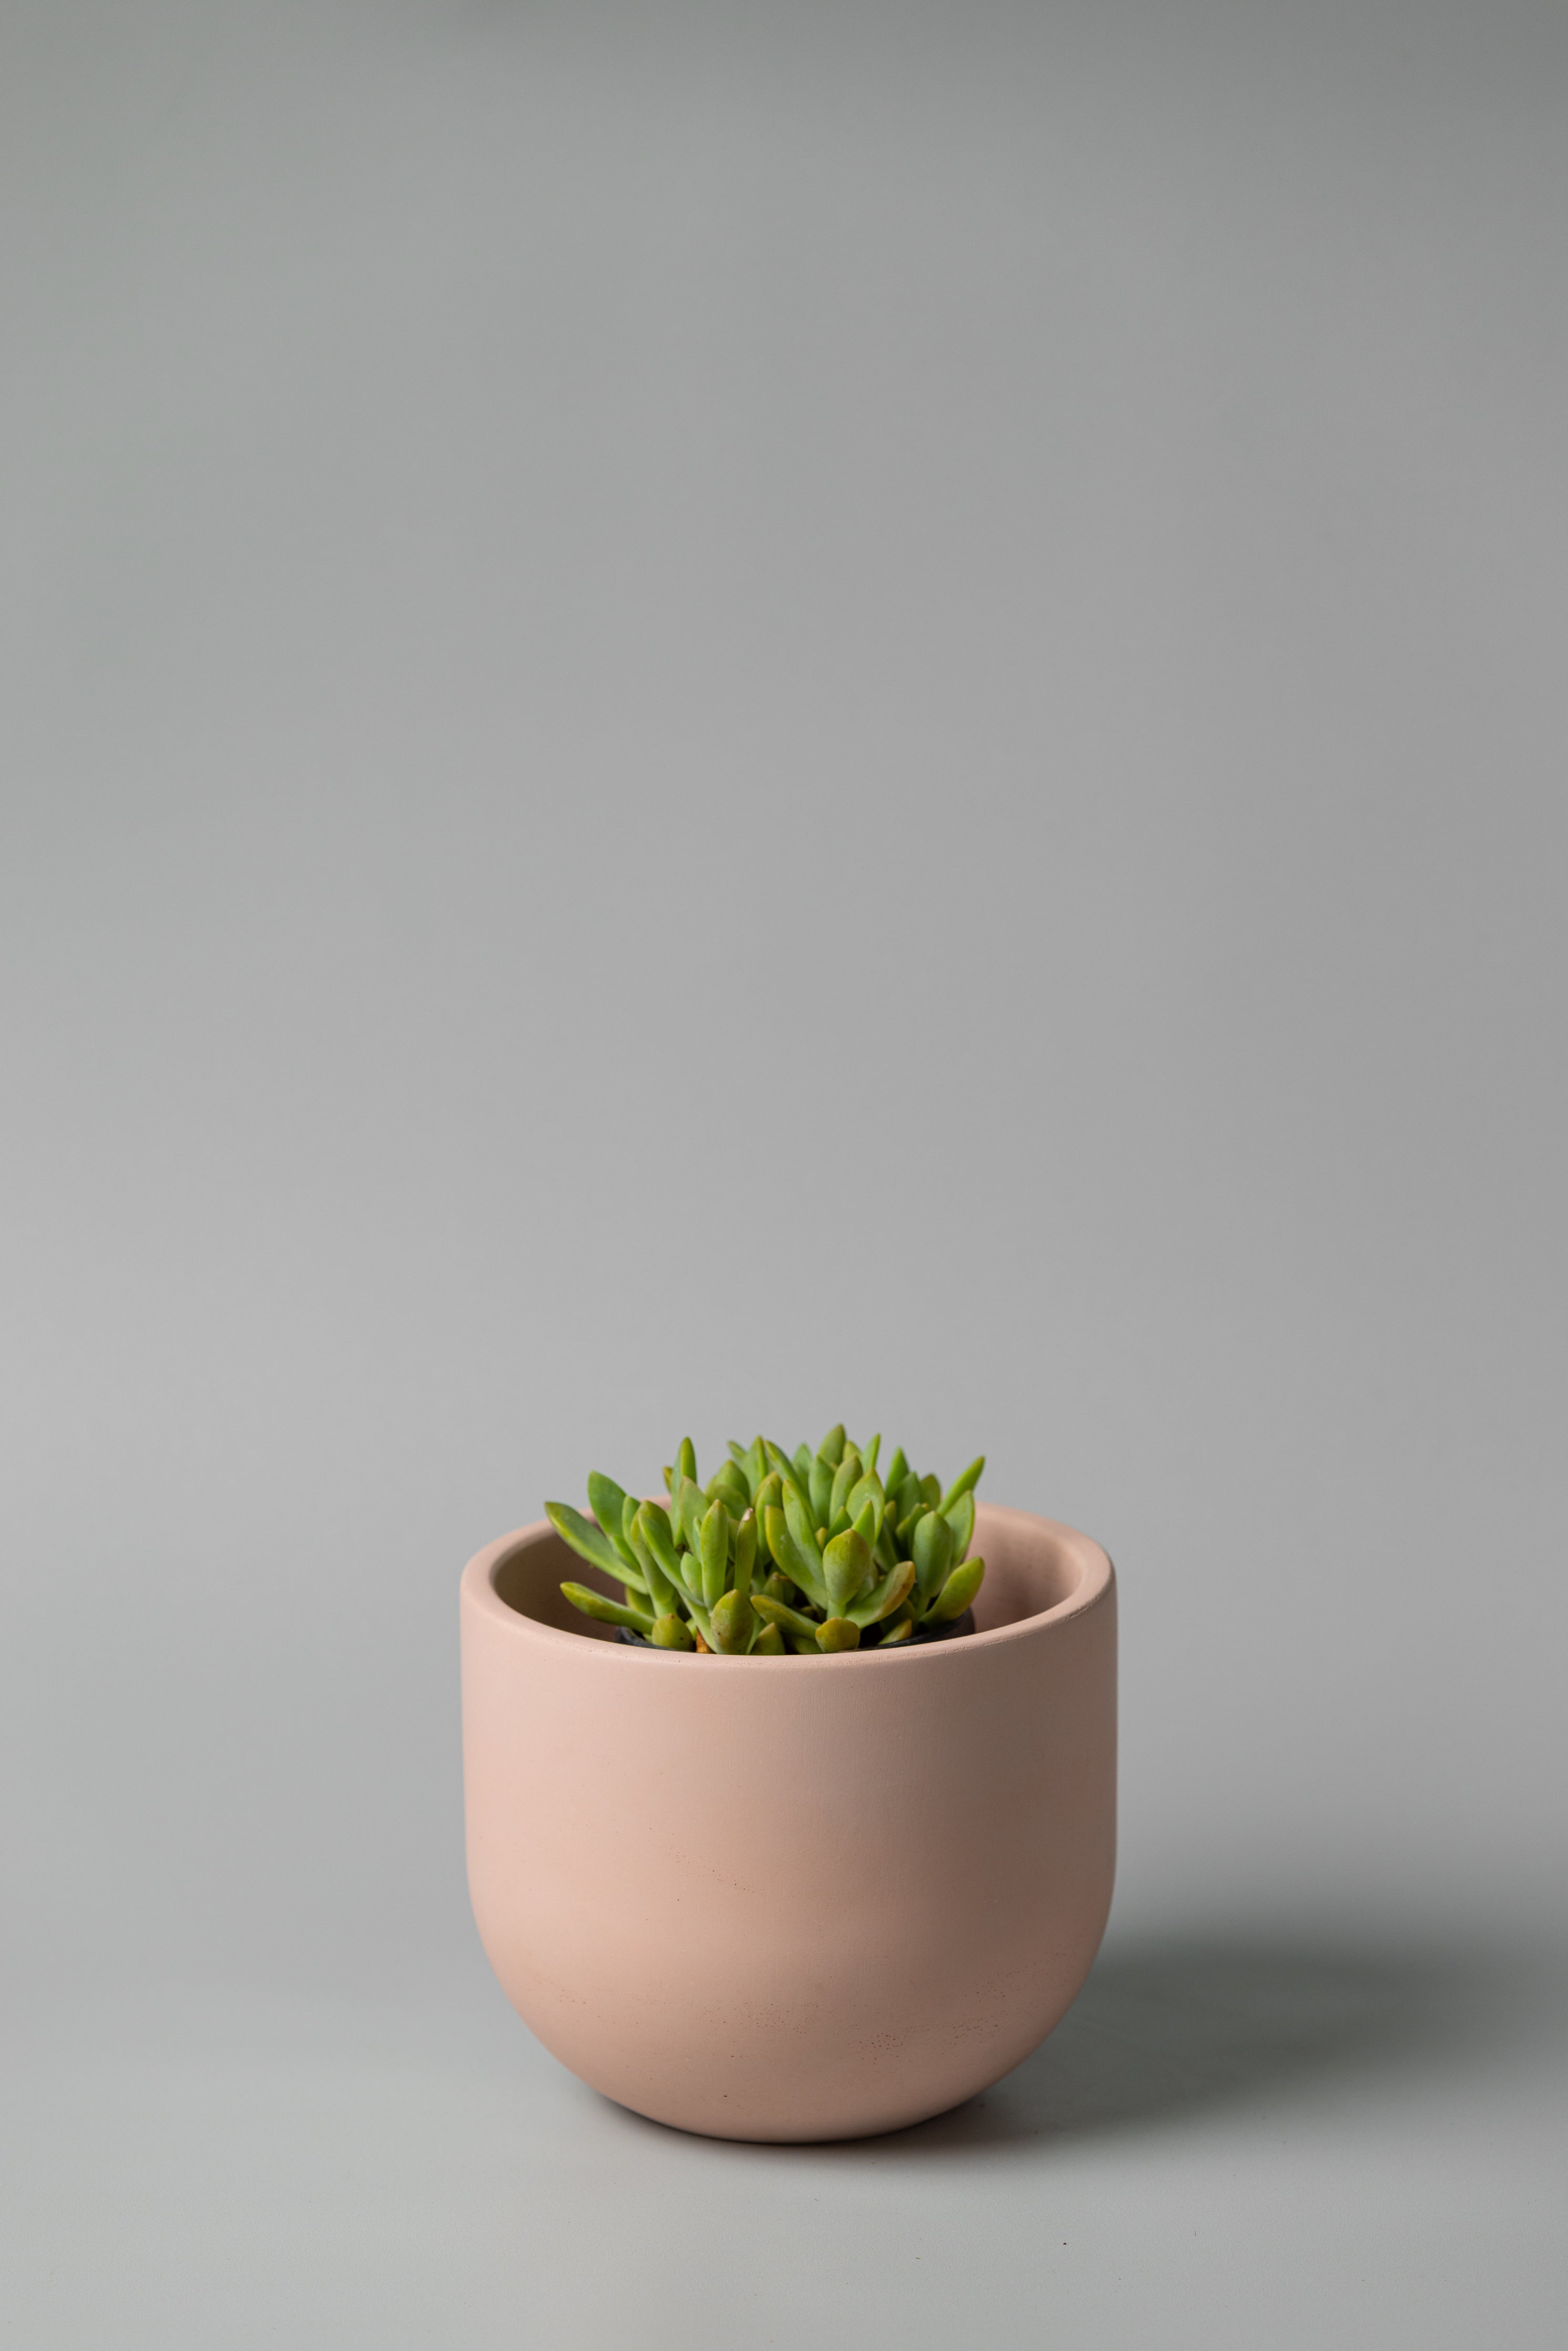 6" beige concrete planter with a succulent 